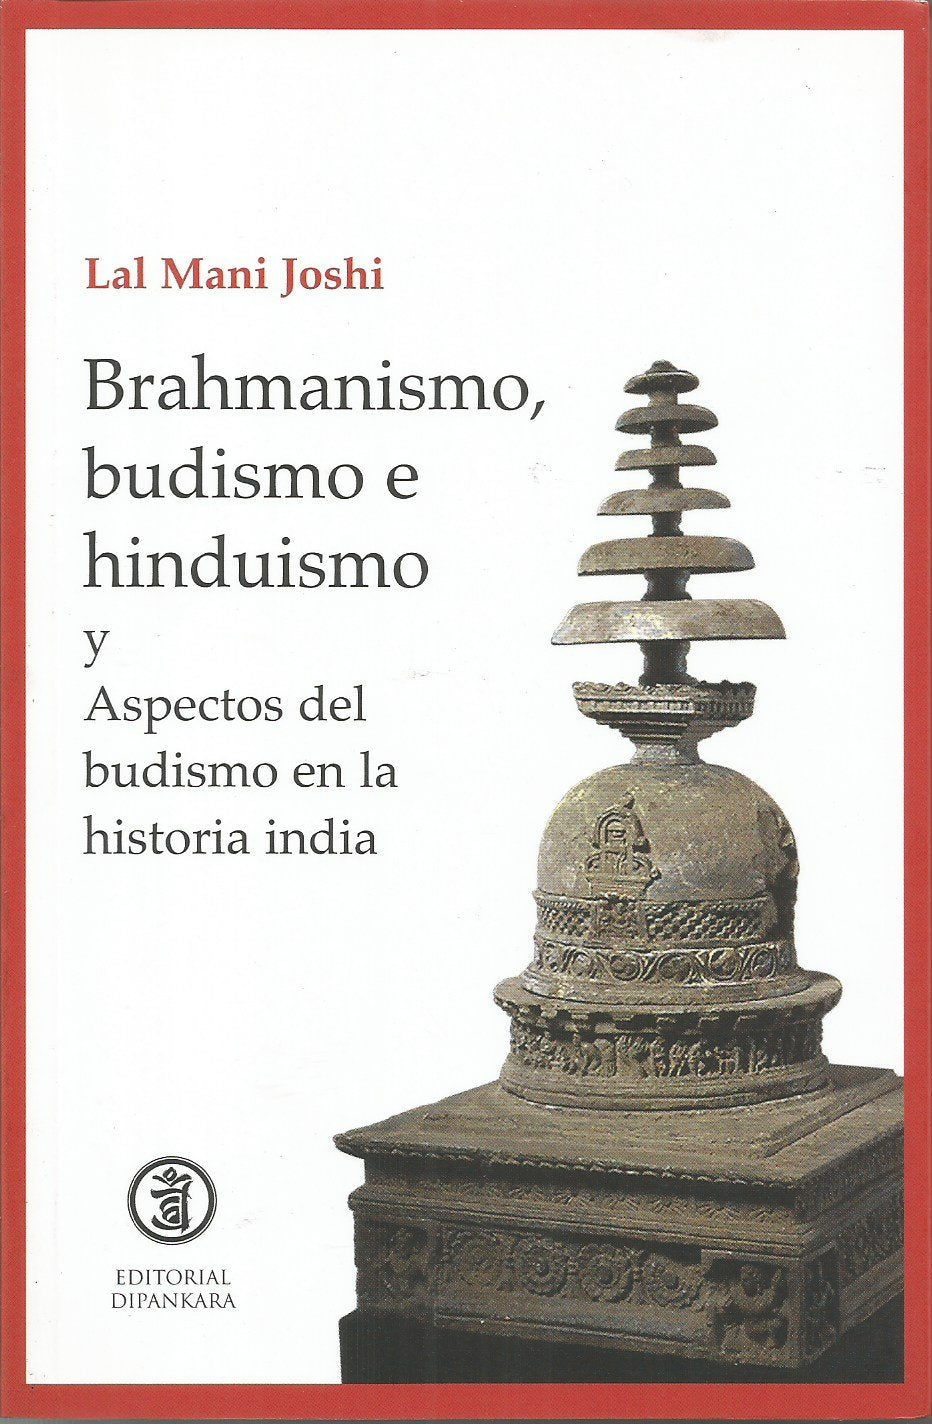 Sxgitario - Ananda es un concepto importante en varias tradiciones  espirituales de la India, como el hinduismo y el budismo. Se considera que  es uno de los objetivos más elevados de la